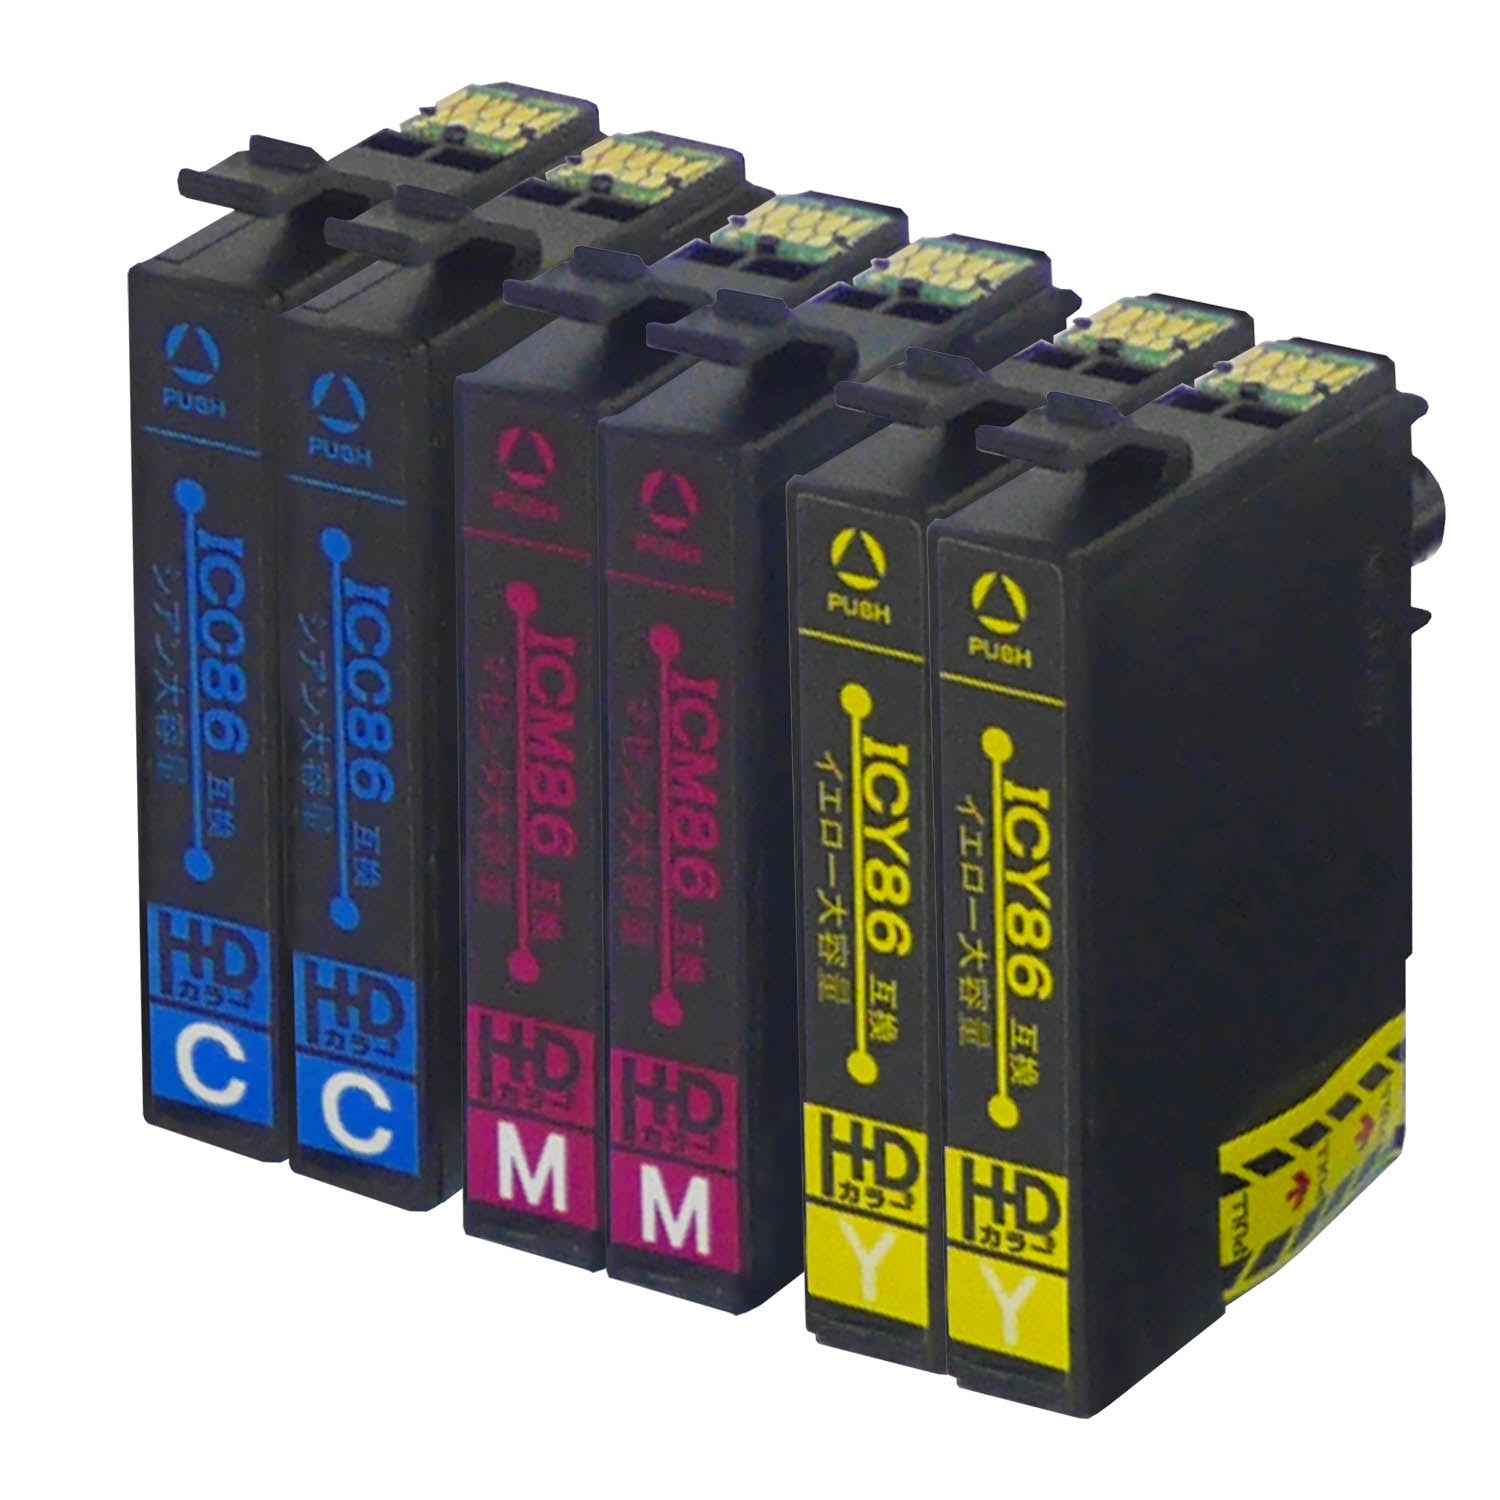 エプソン用 IC86 (かぎ) 互換インク カラー3色 大容量